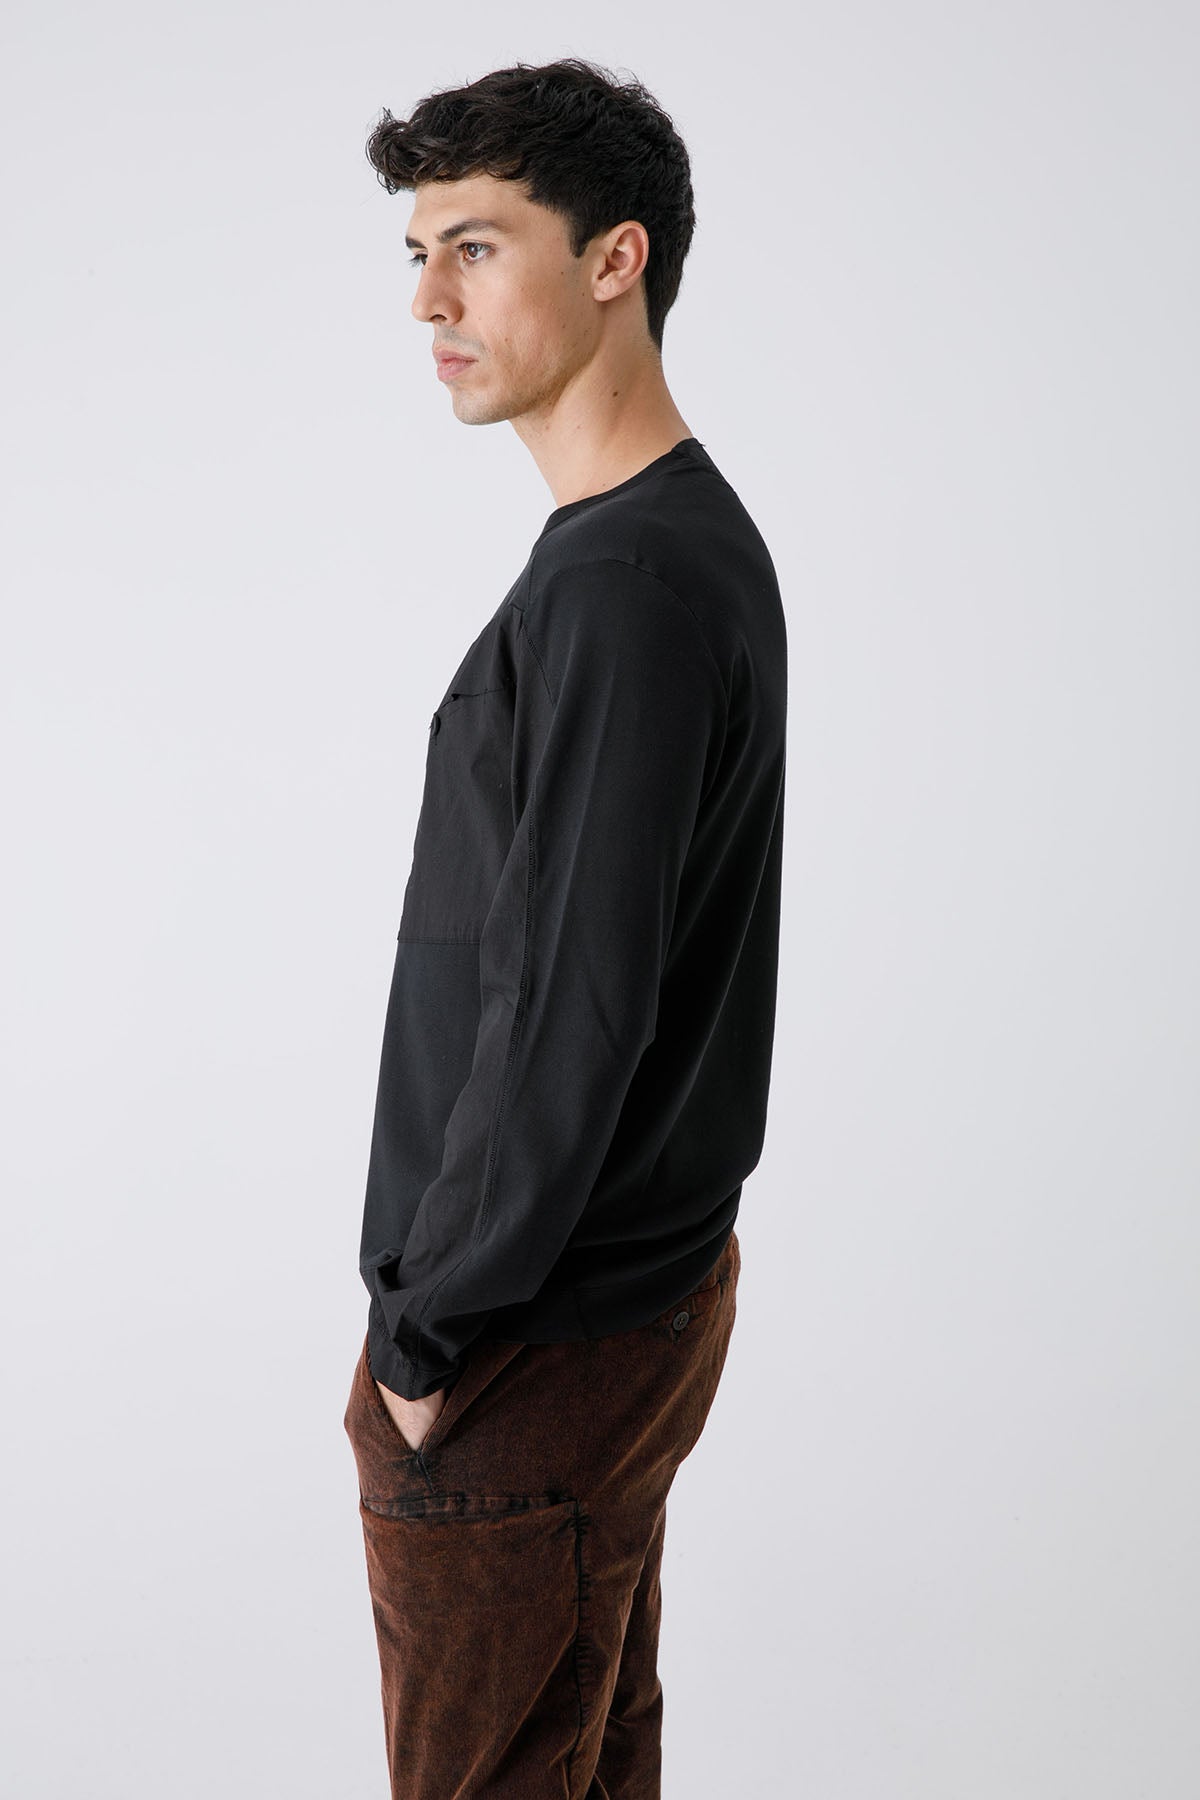 Transit Cep Detaylı Uzun Kollu T-shirt-Libas Trendy Fashion Store